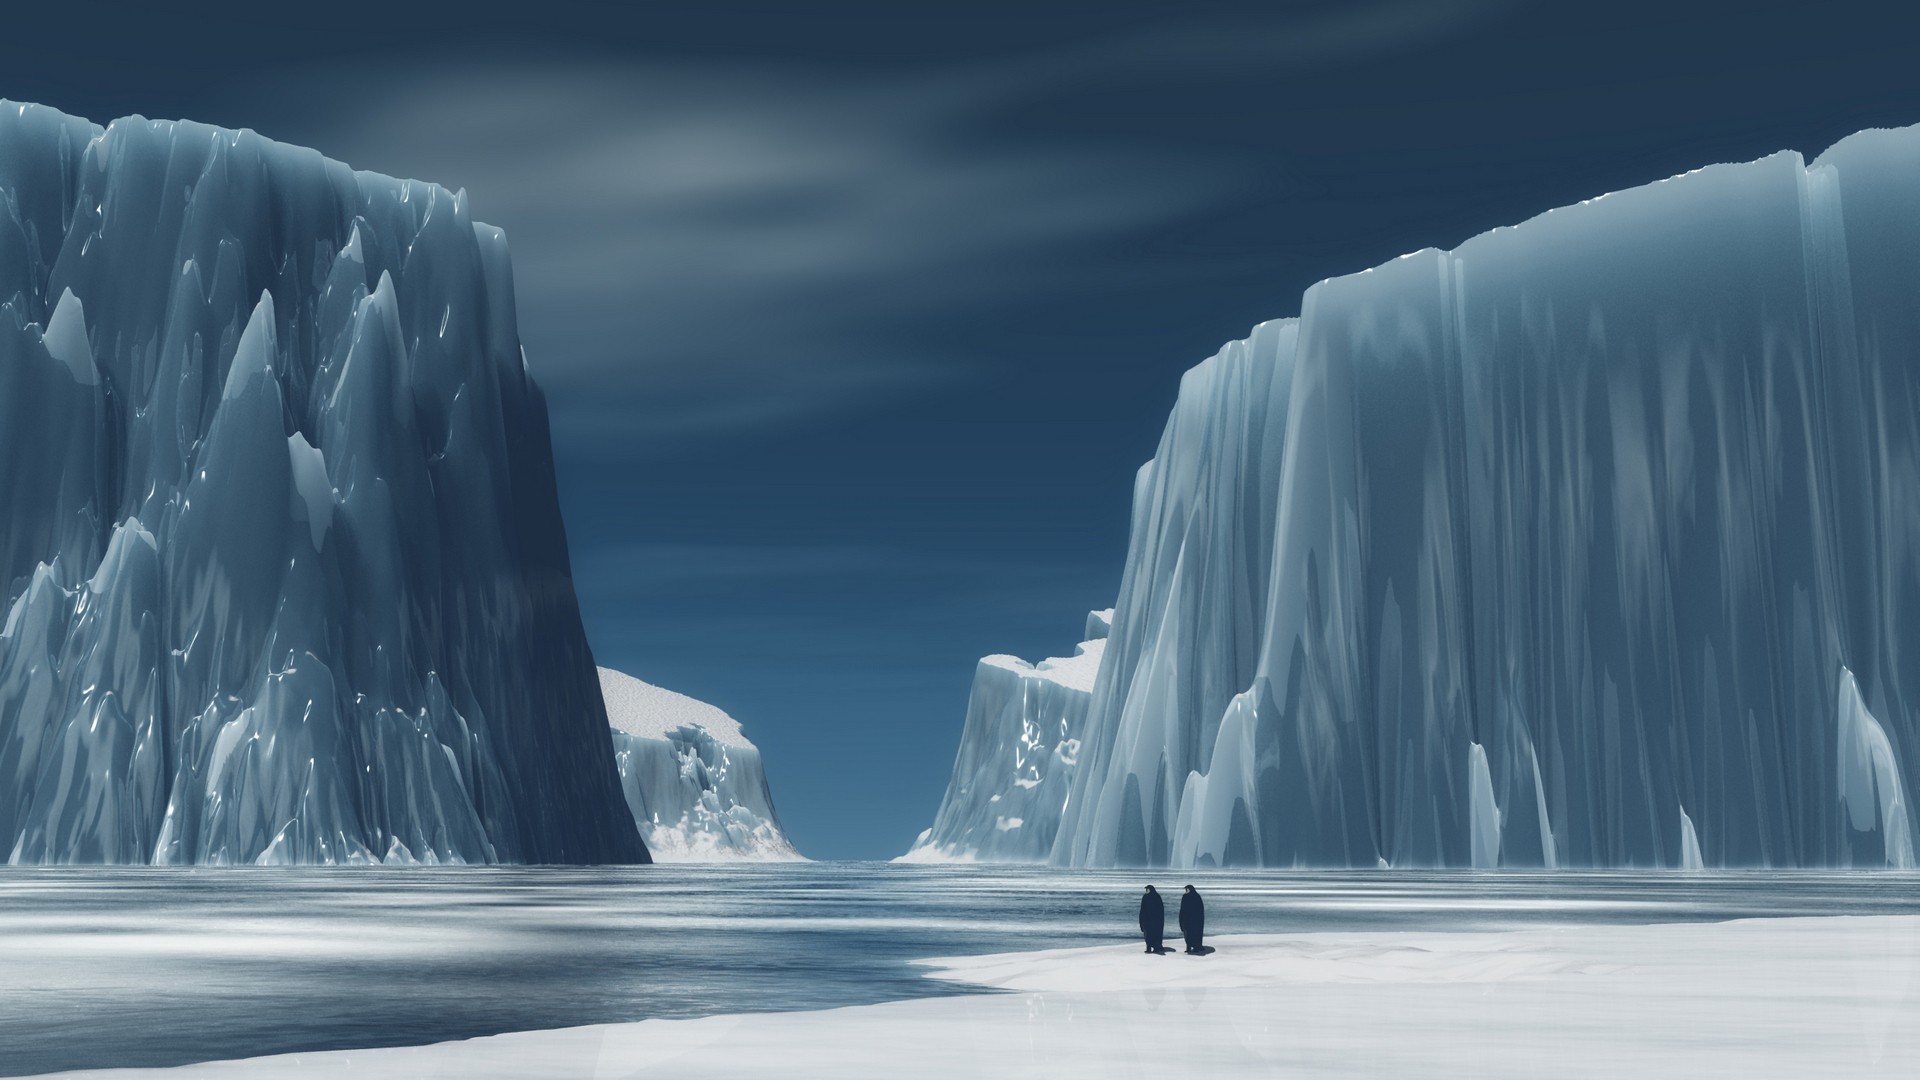 General 1920x1080 mountains river ice snow couple Antarctica penguins digital art Arctic artwork landscape